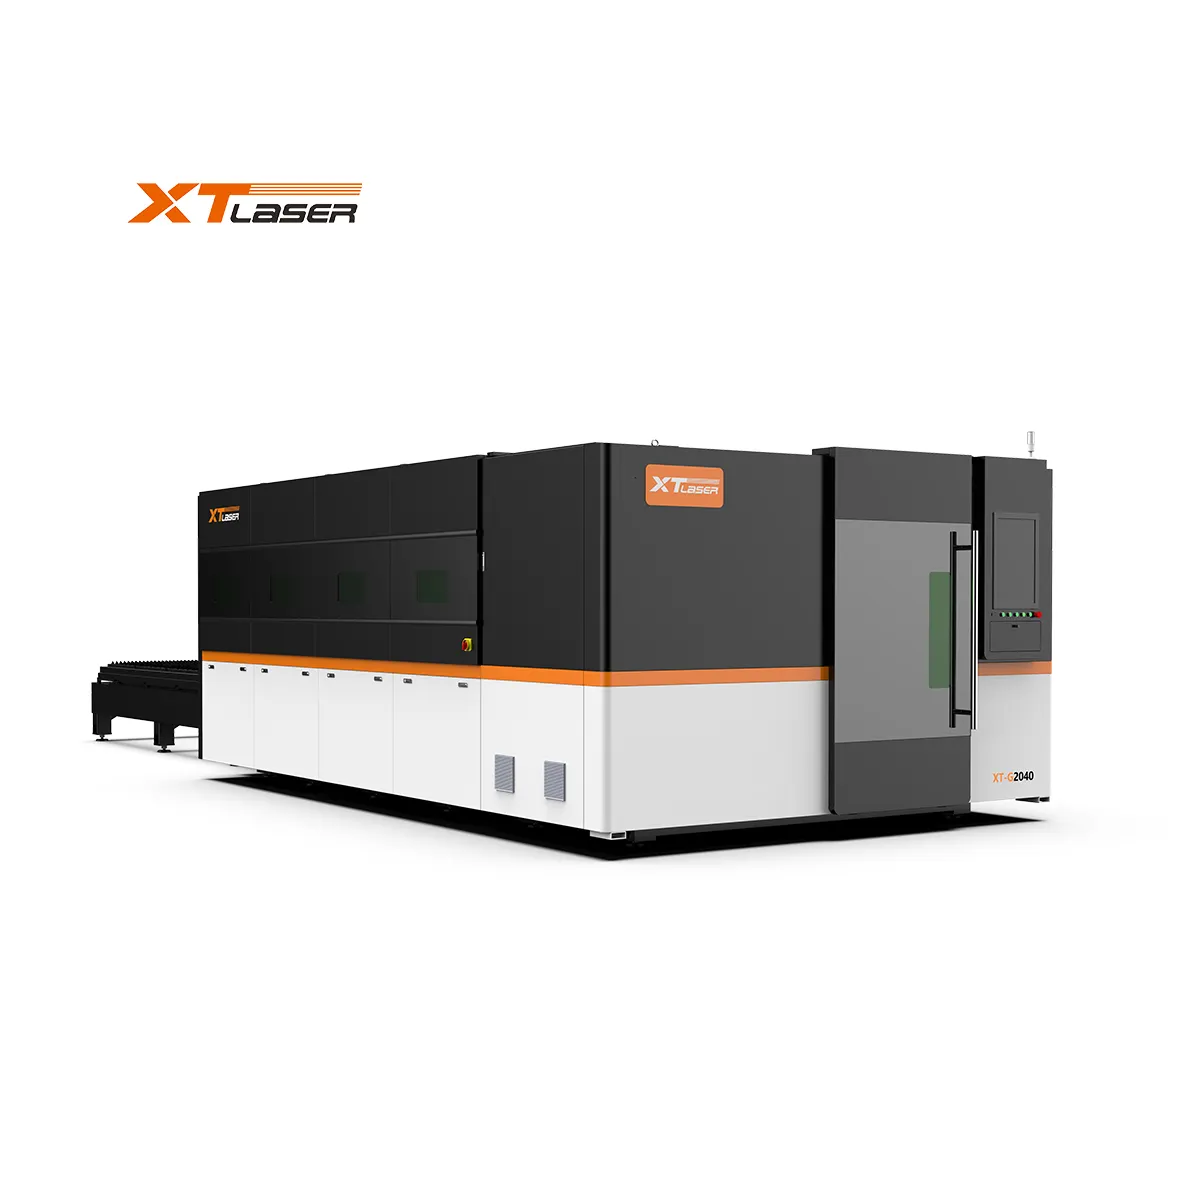 XT LASER europäische 6000 W Metall-Bandfaser-Laser-Schneidemaschine für Edelstahl Kohlenstoffstahl